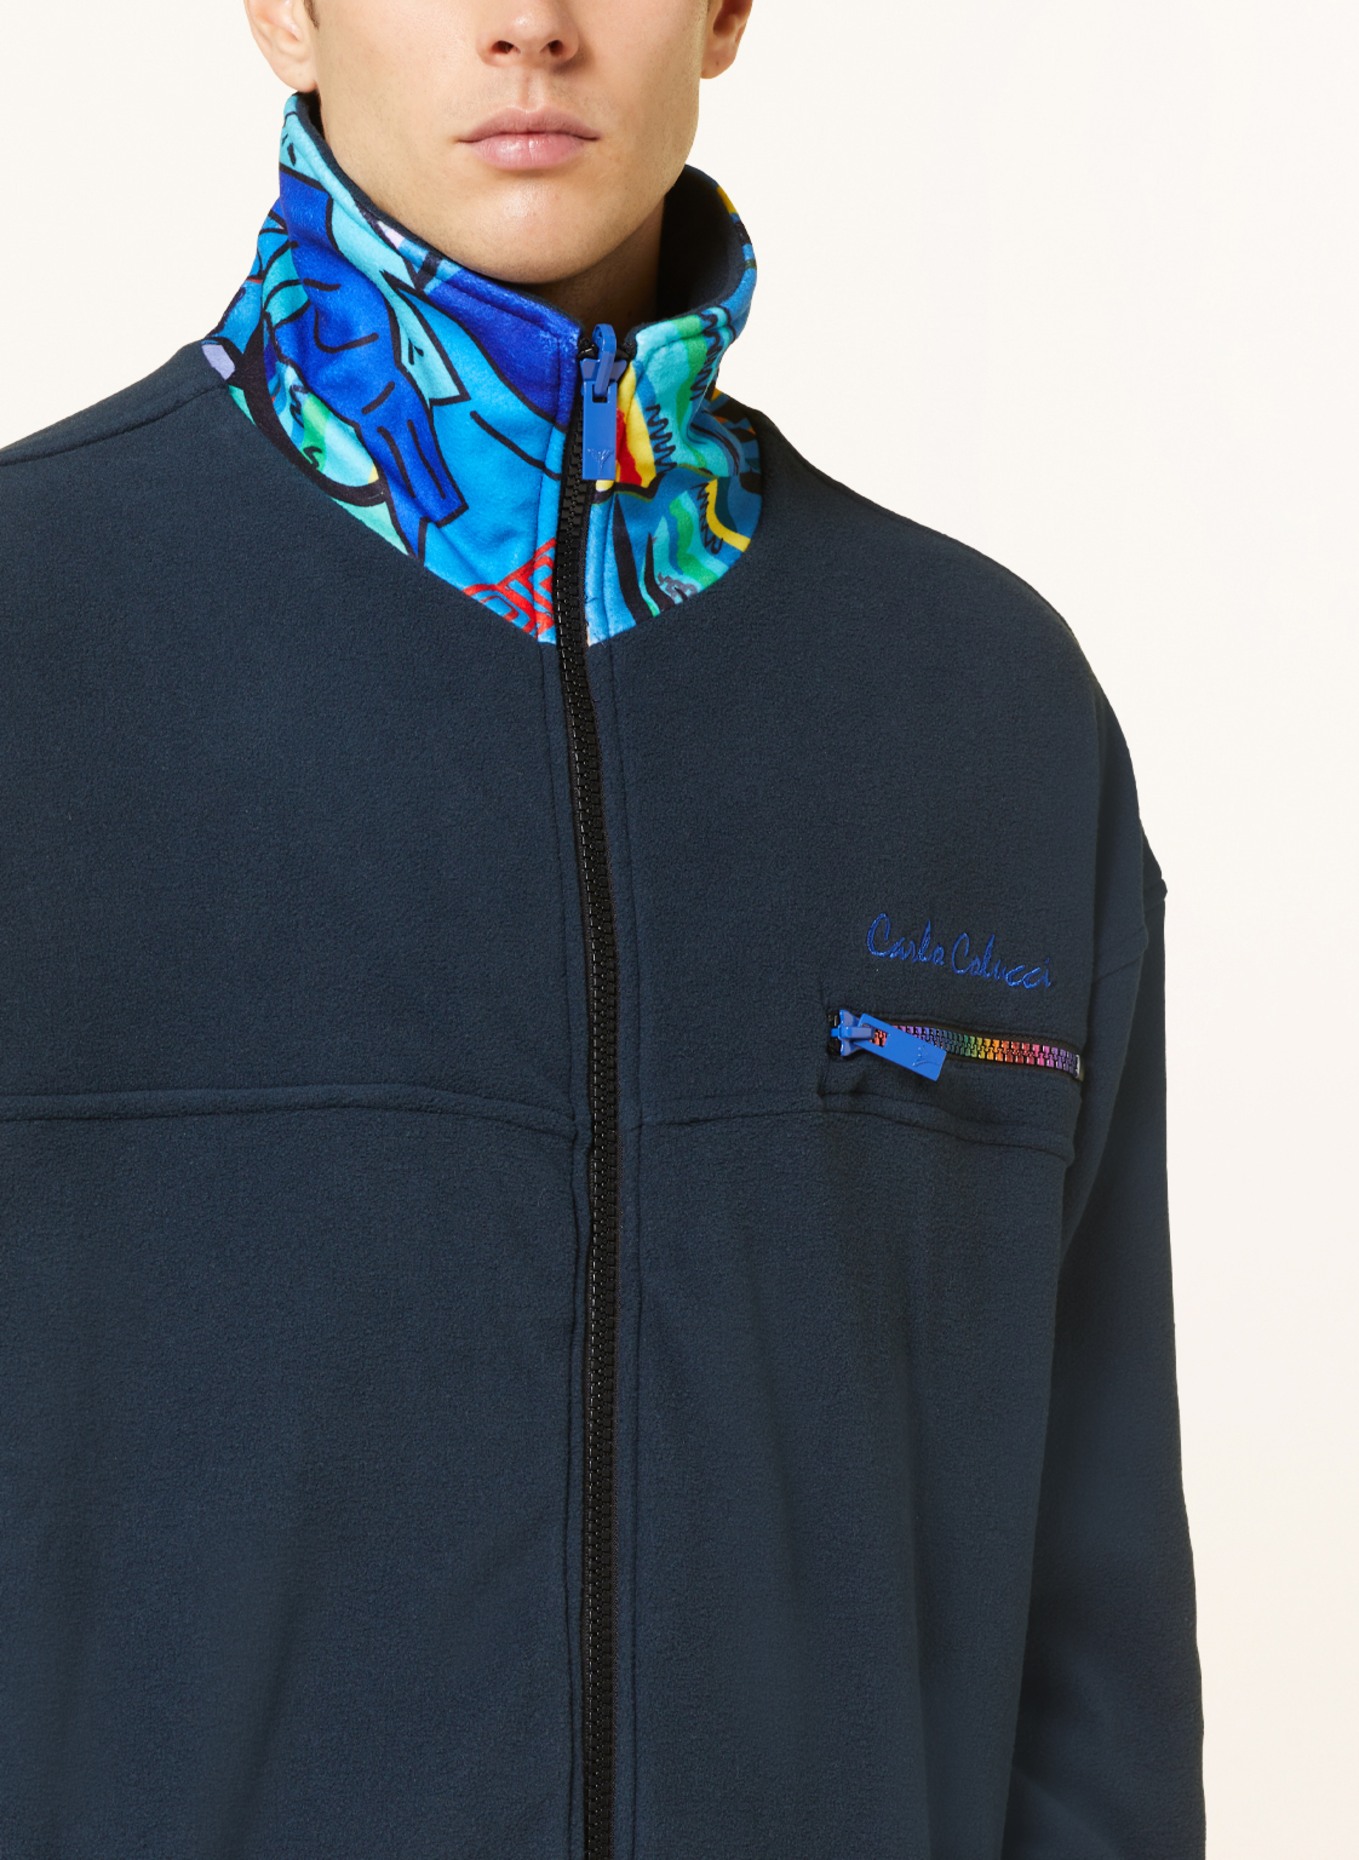 CARLO COLUCCI Fleece jacket, Color: BLUE/ DARK BLUE/ YELLOW (Image 6)